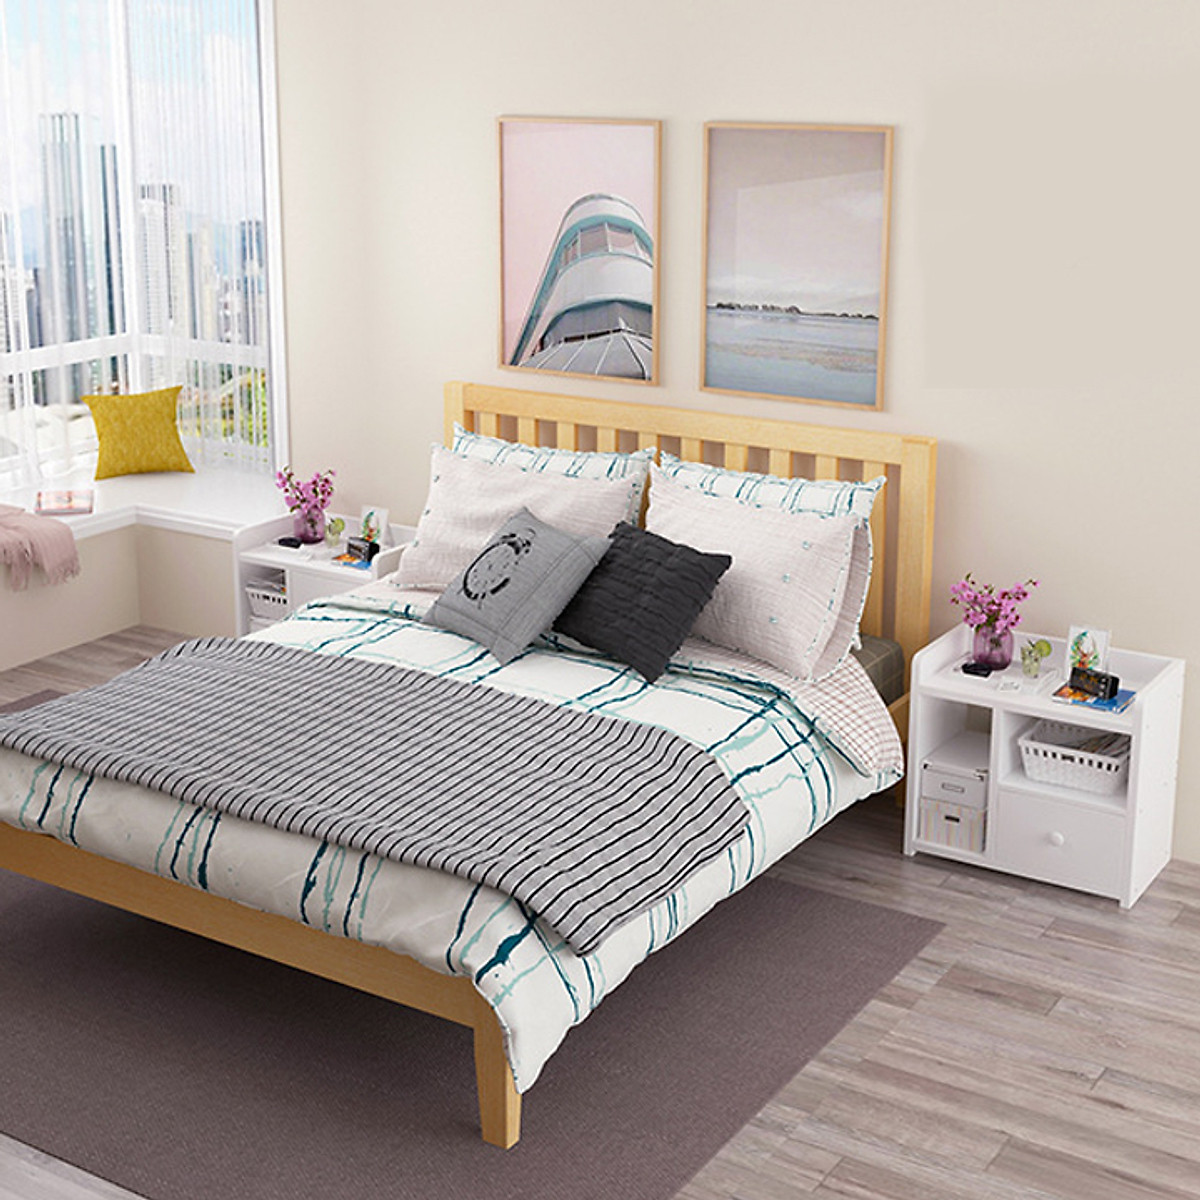 Kệ 3 tầng để đồ đa năng, tủ đầu giường bằng gỗ cao cấp - Chính hãng Amalife